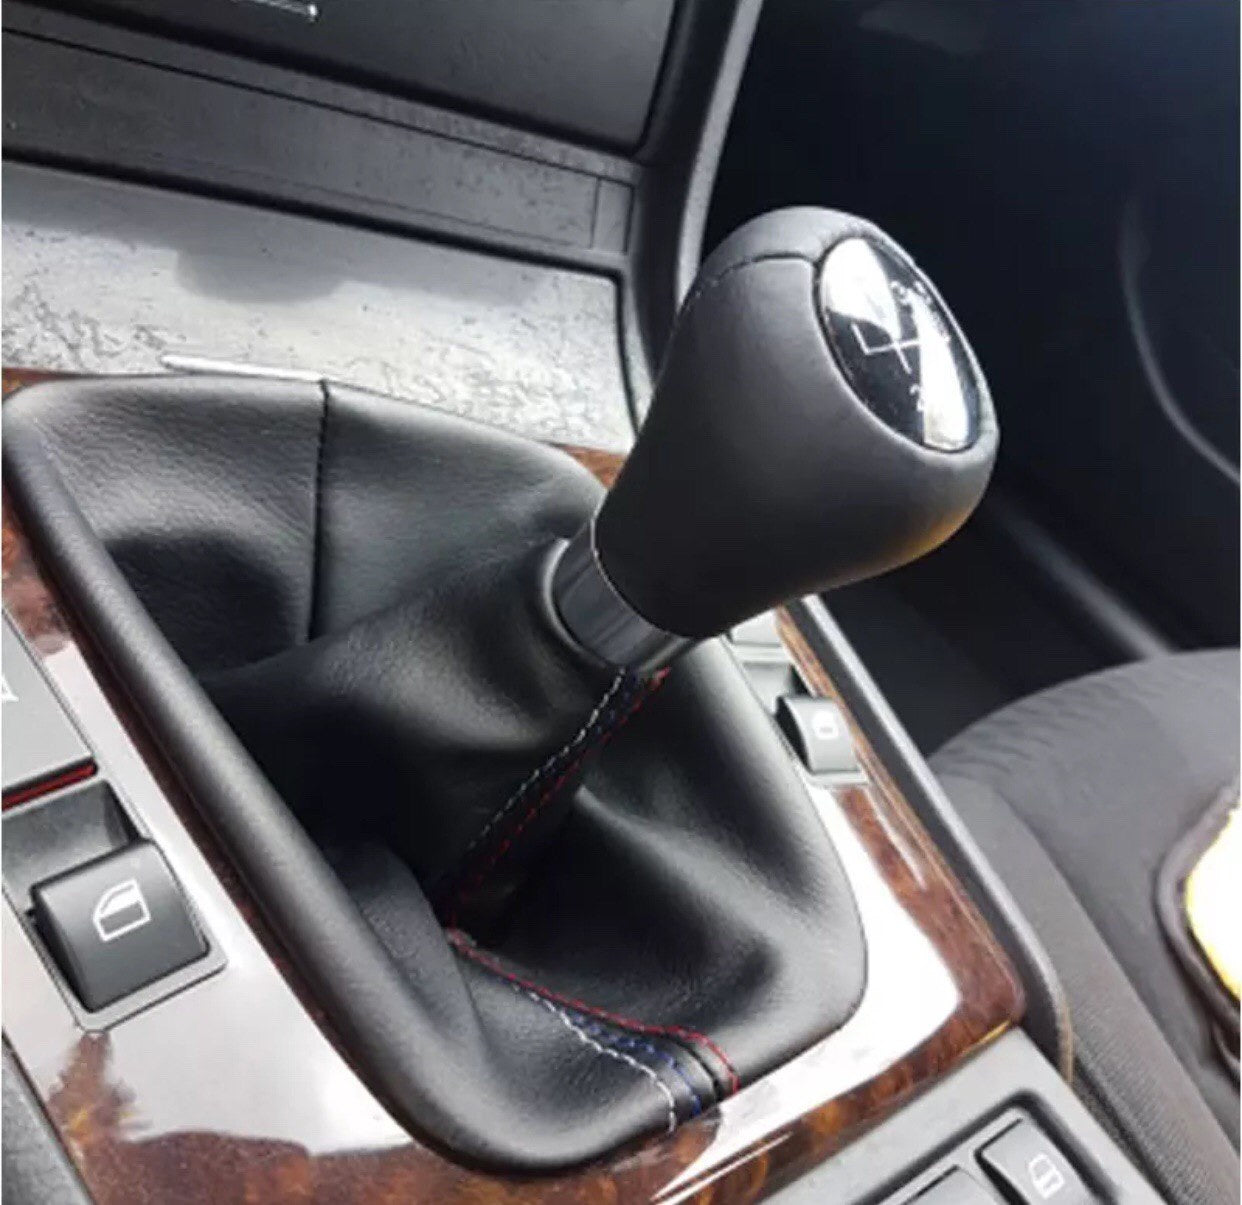 Gear Shift Collar Leather Boot Cover Case For BMW E46, E30, E34, E36, E46, Z3